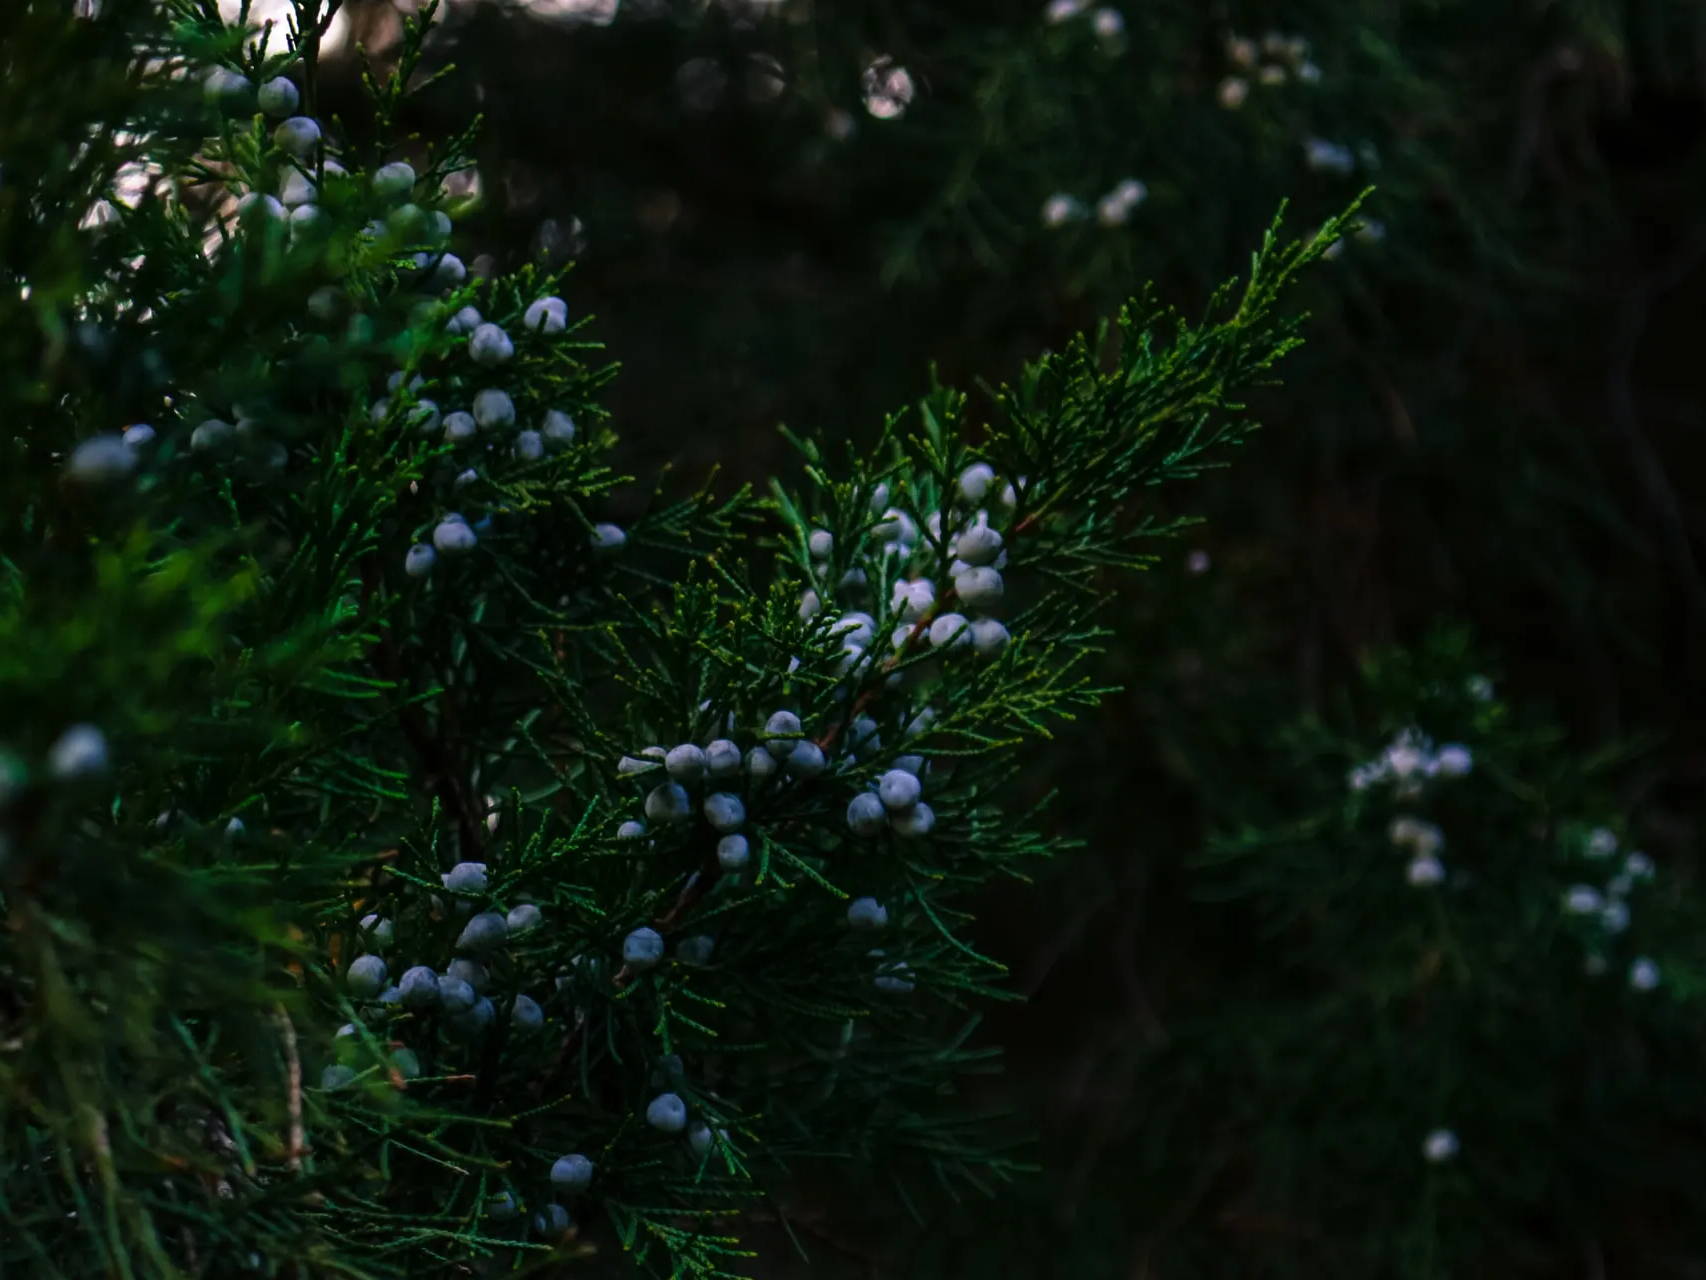 Close-up of a juniper bush